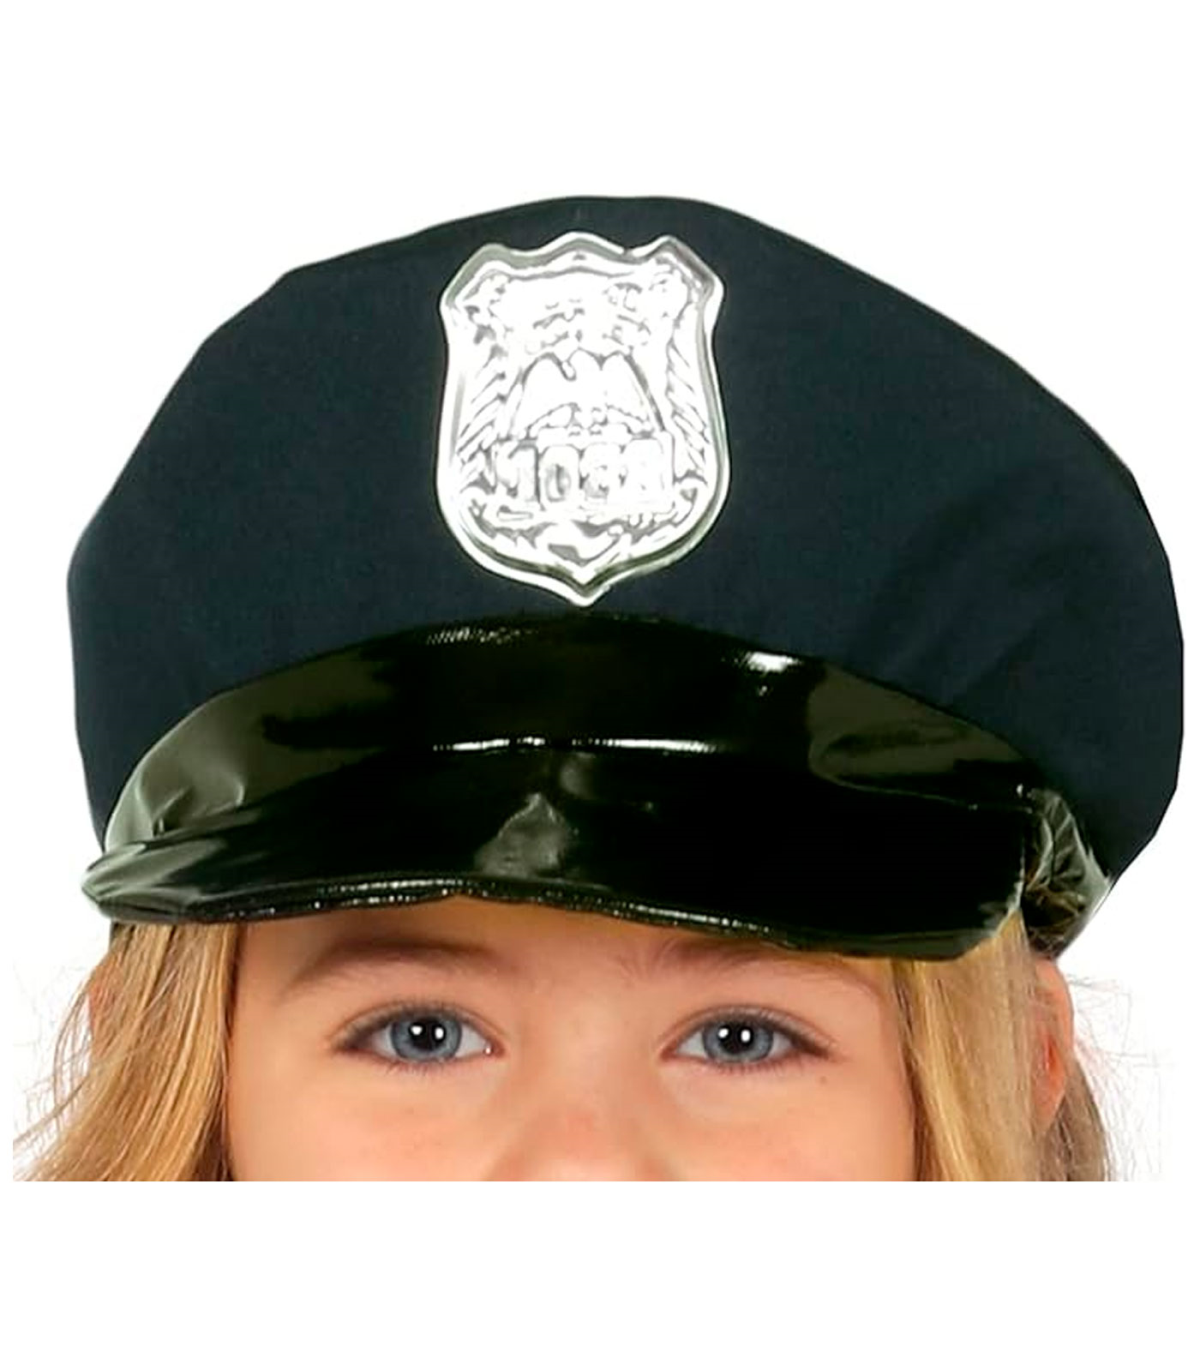 Vestido de disfraz de oficial policía con sombrero + cinturón +